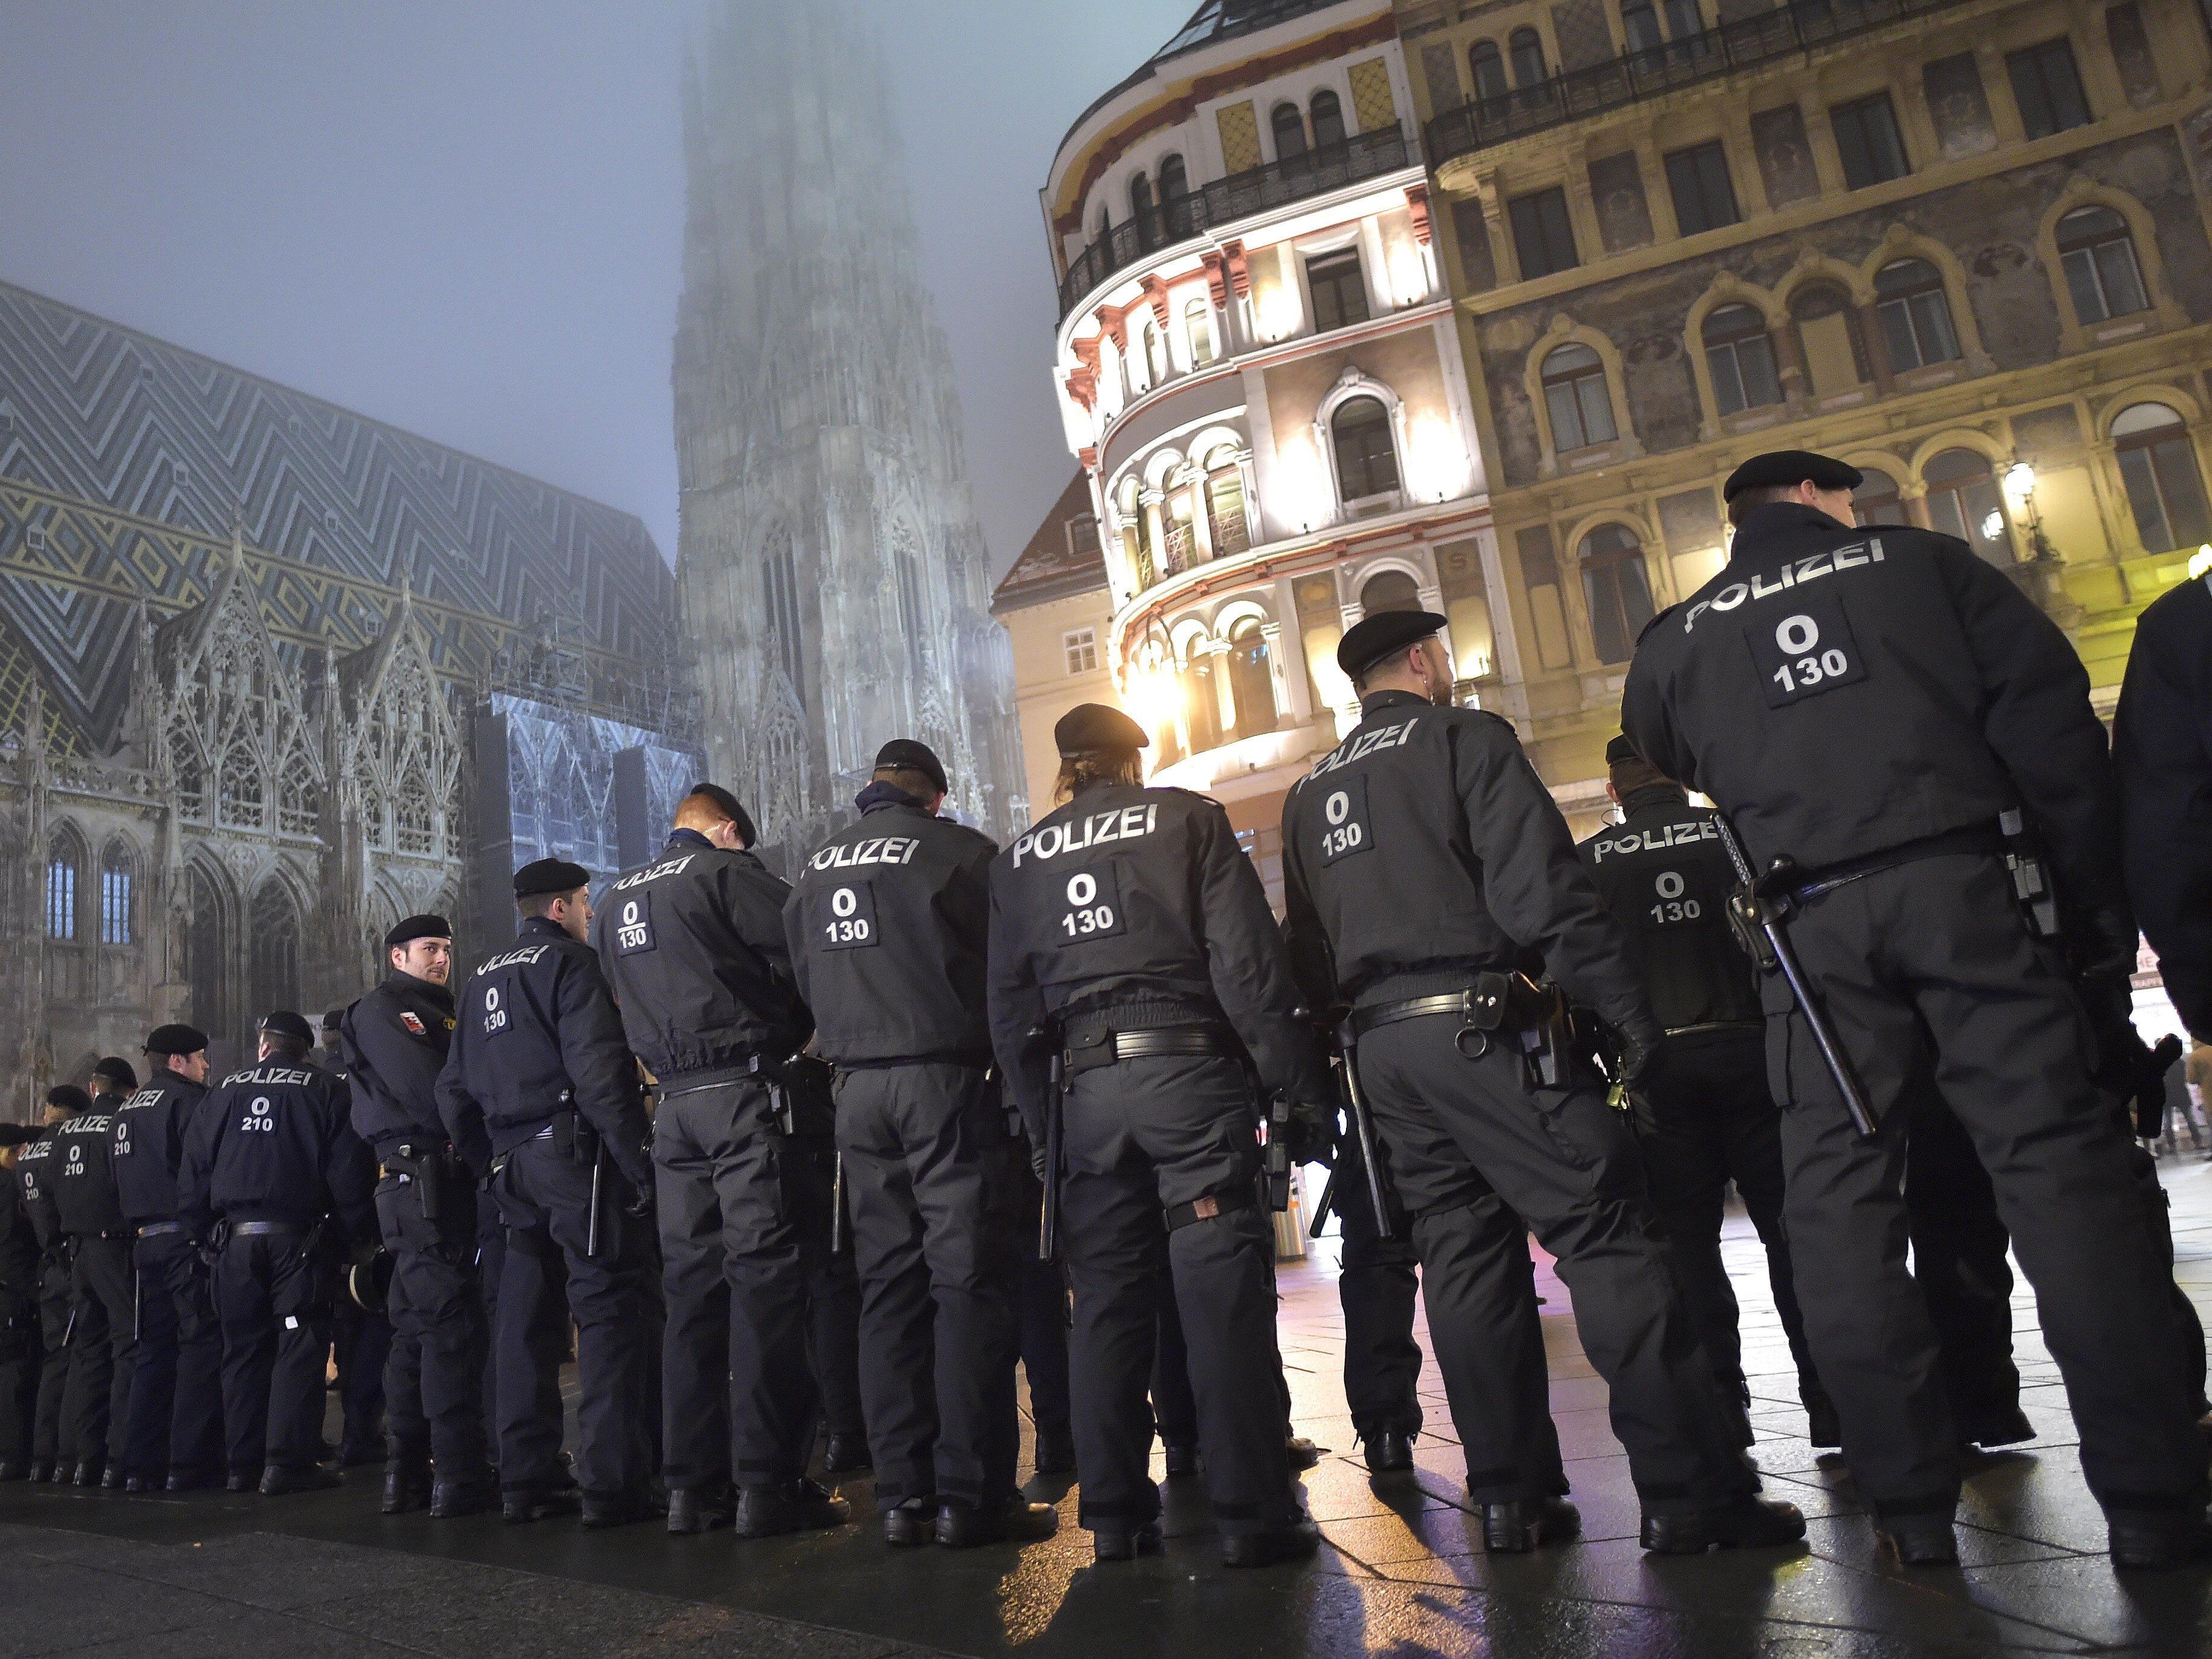 Polizisten während der Demonstration am Stephansplatz, wo diese friedlich endete